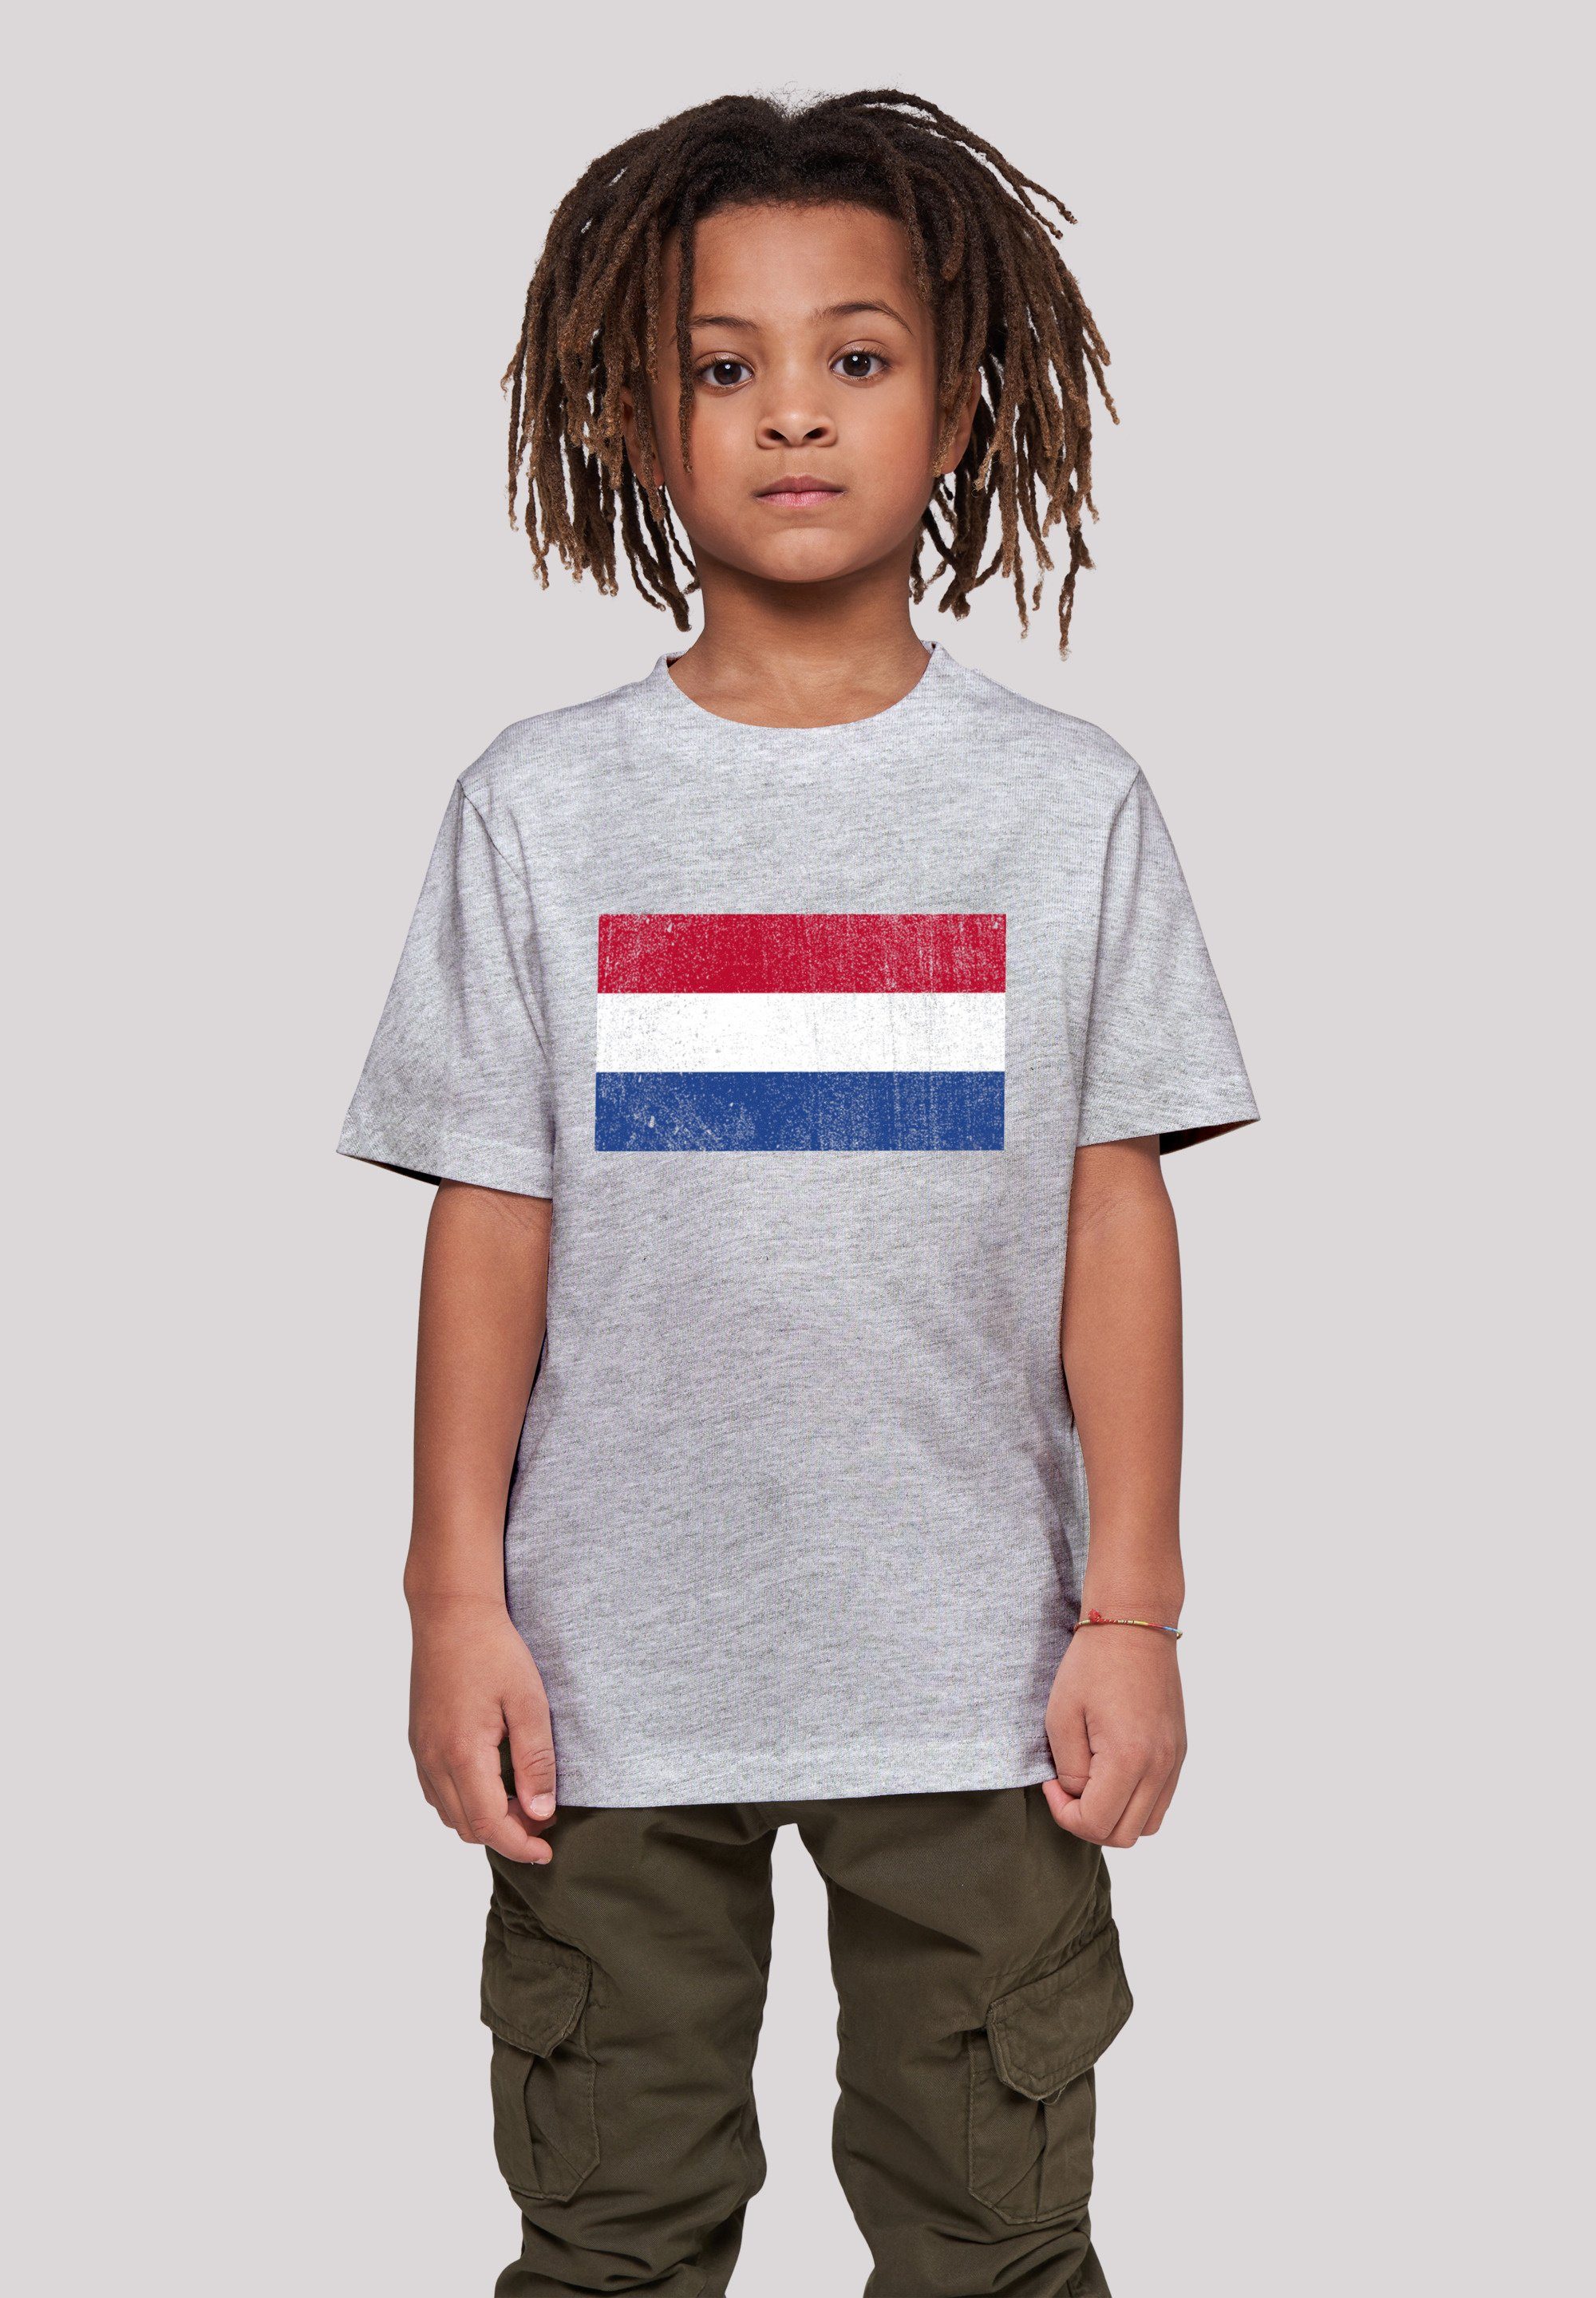 F4NT4STIC T-Shirt Netherlands NIederlande Holland Flagge distressed Keine  Angabe, Das Model ist 145 cm groß und trägt Größe 145/152